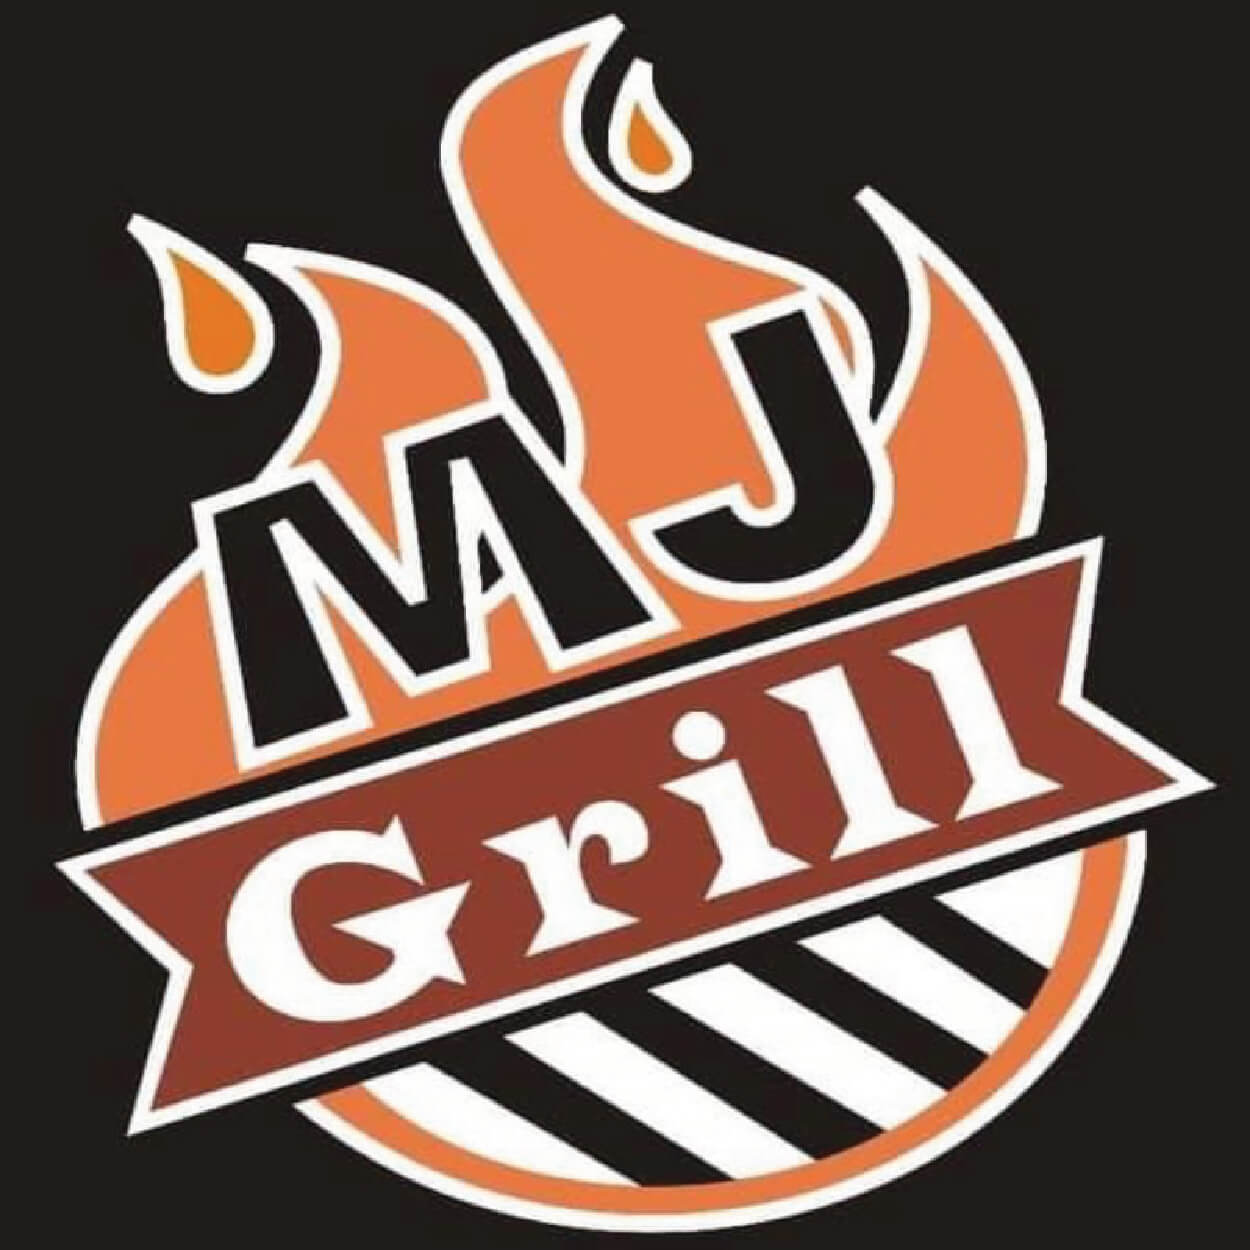 MJ grill